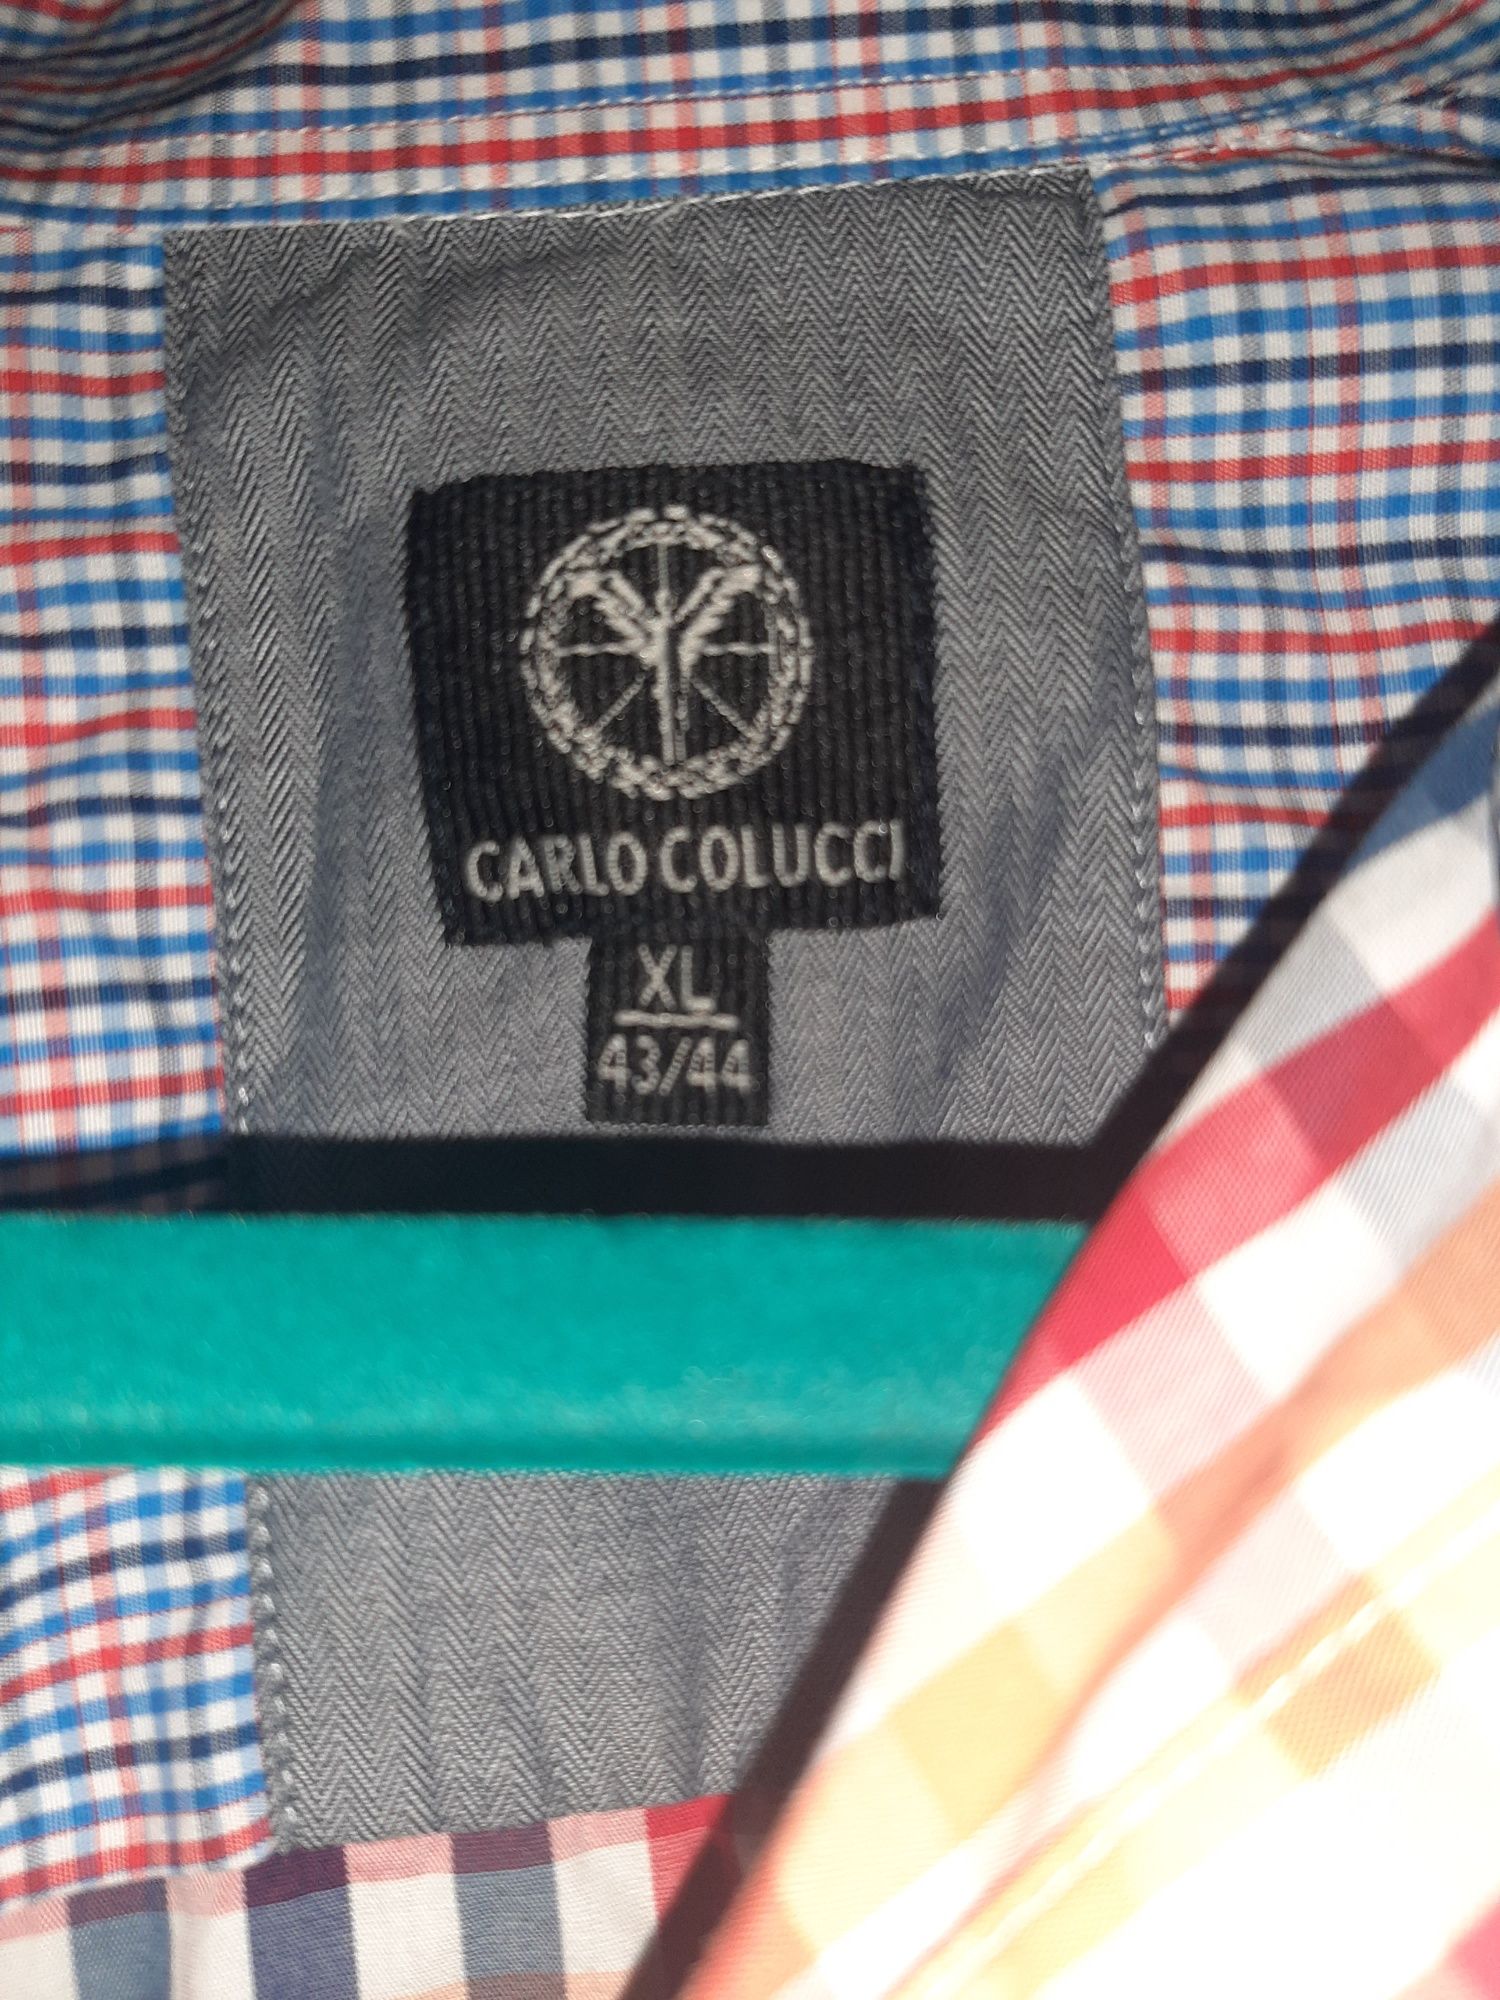 Camase Carlo Colucci Xl , model superb, impecabilă.
Marime eticheta -